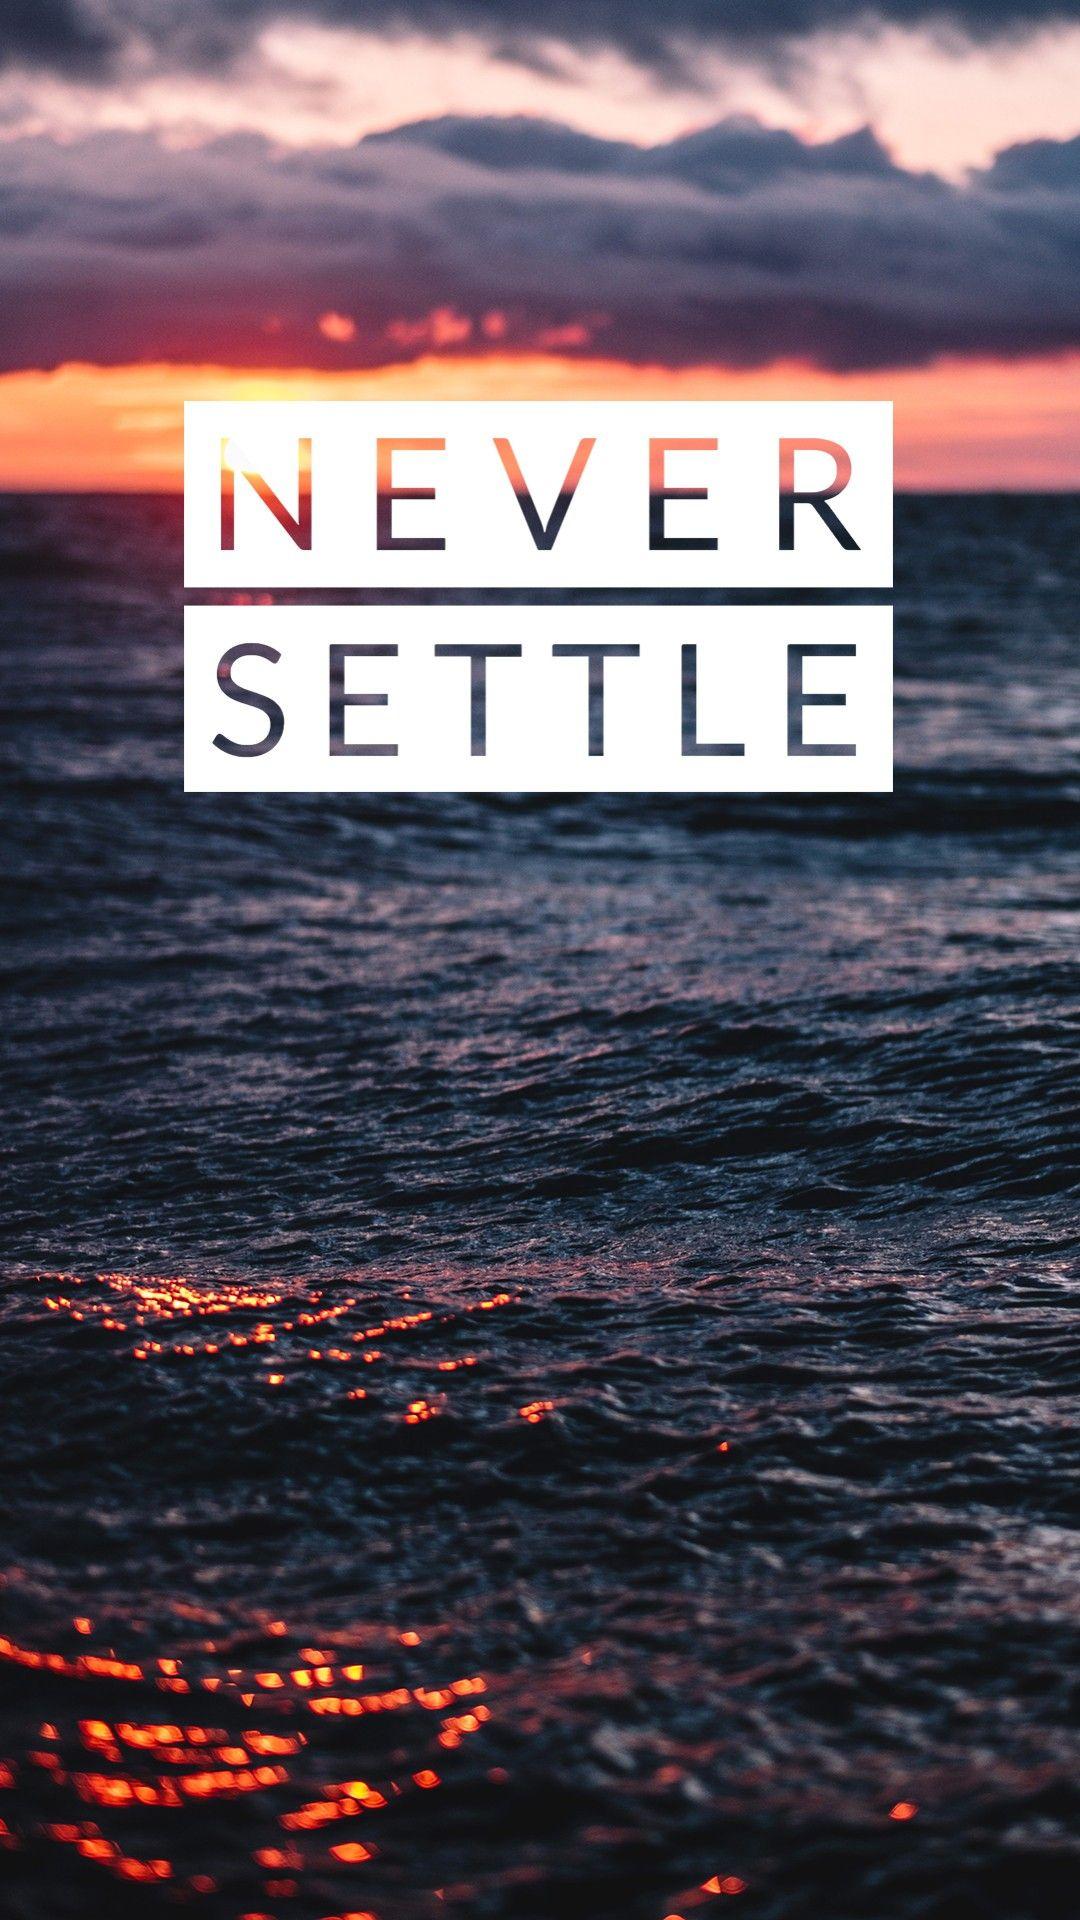 Never Settle. Never settle wallpaper